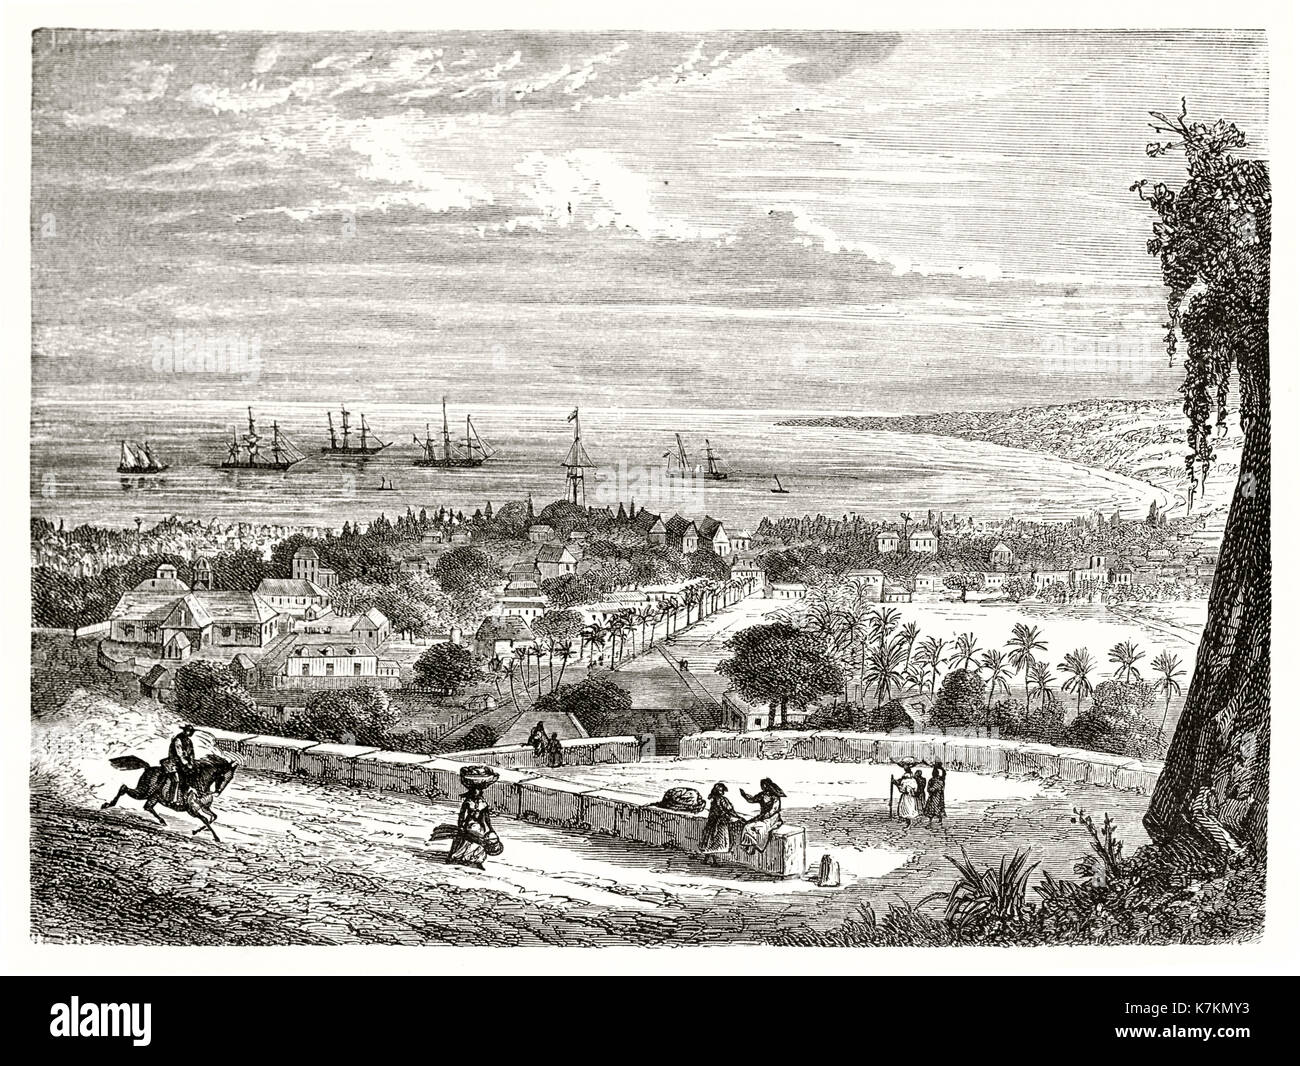 Alte Ansicht von Saint-Paul, Insel Reunion. Durch De Berard nach Roussin, Publ. bei Le Tour du Monde, Paris, 1862 Stockfoto